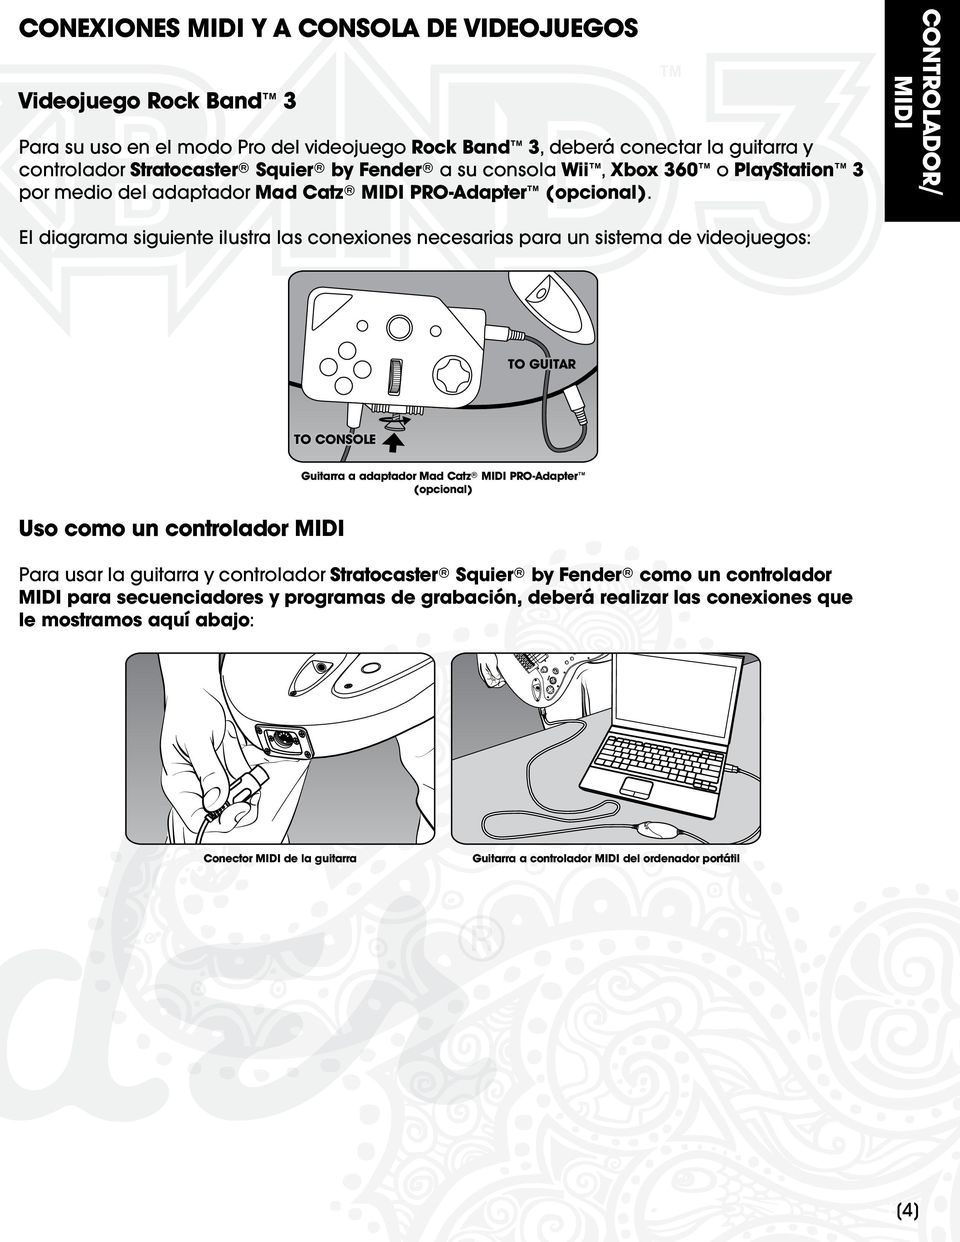 CONTROLADOR/ MIDI El diagrama siguiente ilustra las conexiones necesarias para un sistema de videojuegos: Uso como un controlador MIDI Guitarra a adaptador Mad Catz MIDI PRO-Adapter (opcional)